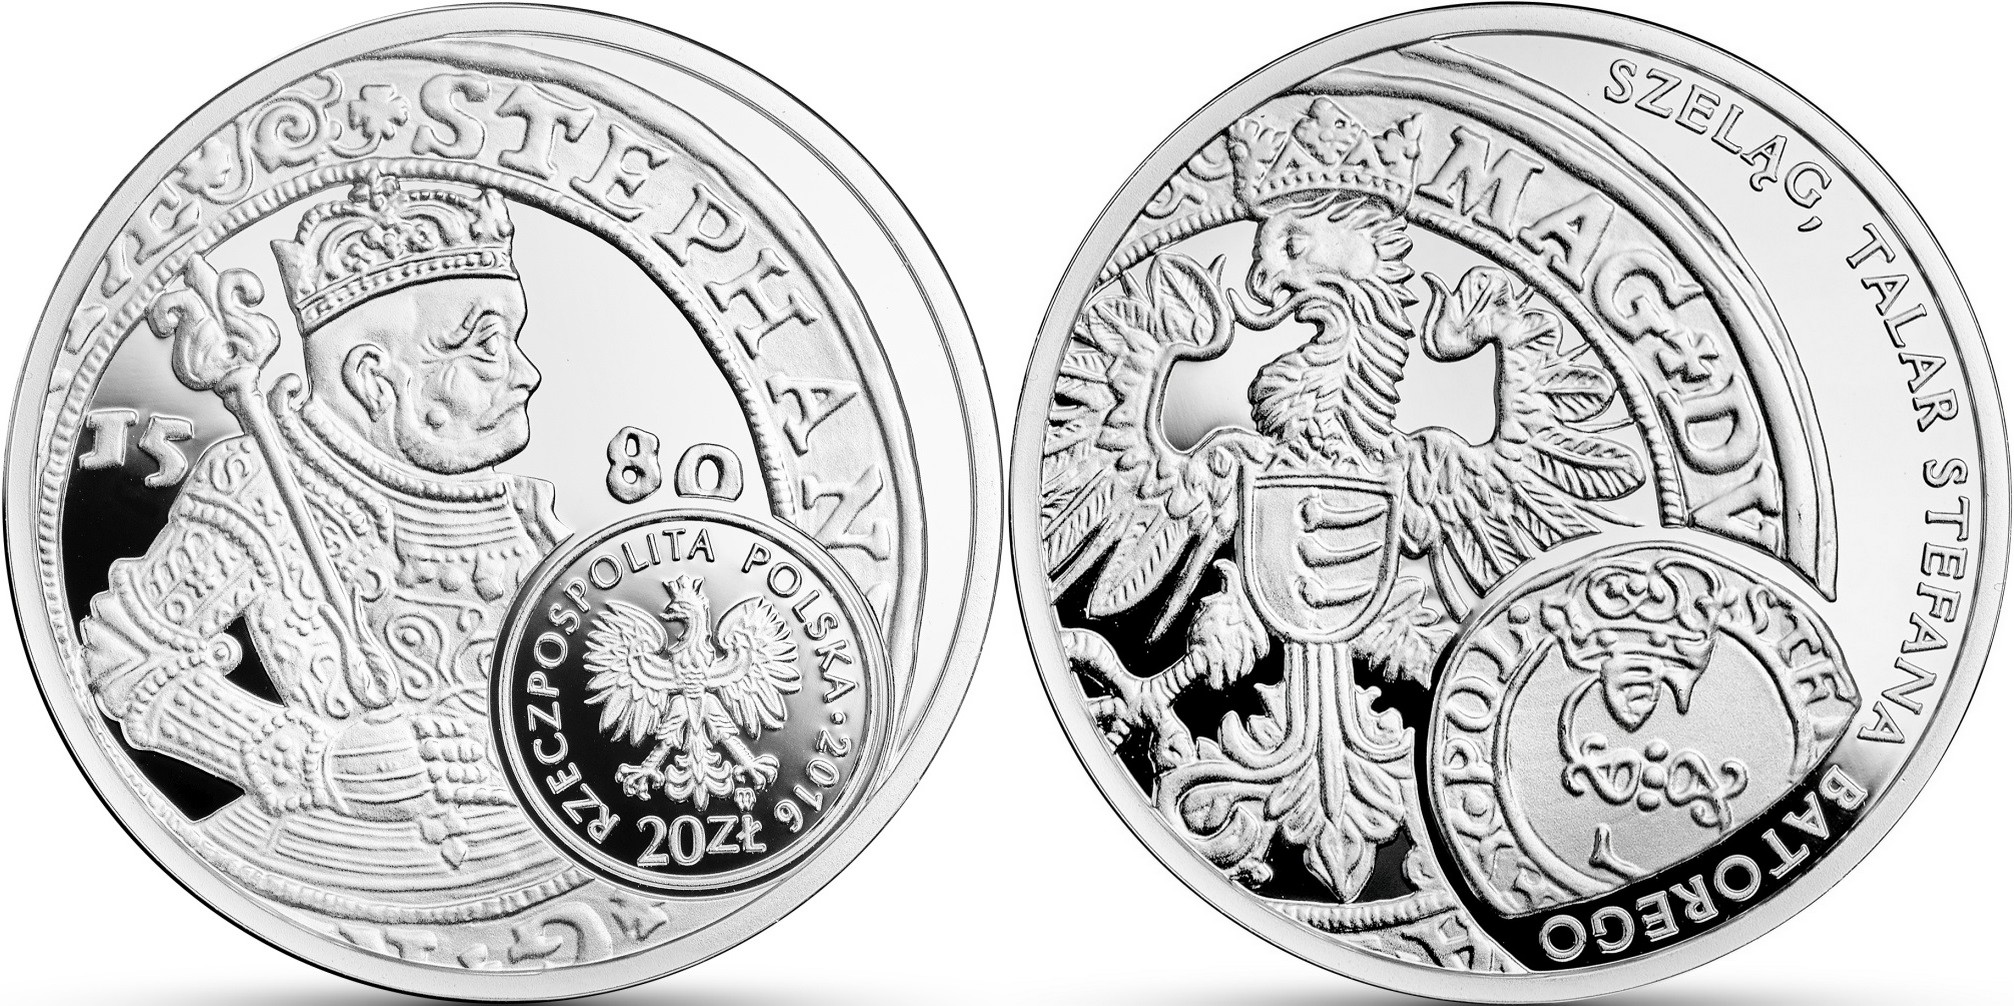 pologne 2016 histoire monnaie polonaise thaler du roi bathory